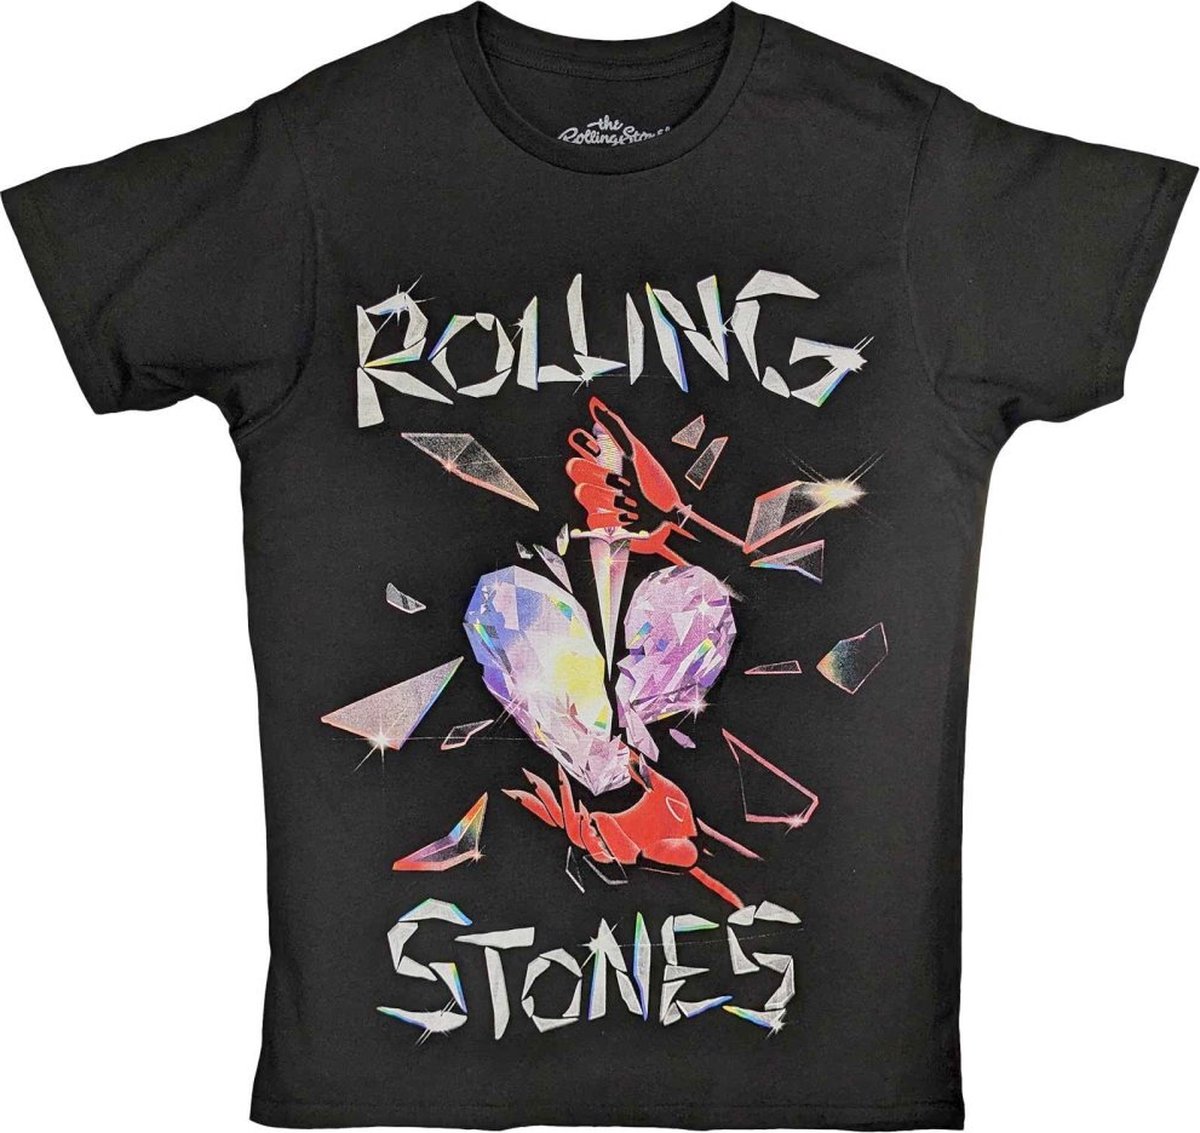 The Rolling Stones - Hackney Diamonds Heart Heren T-shirt - L - Zwart